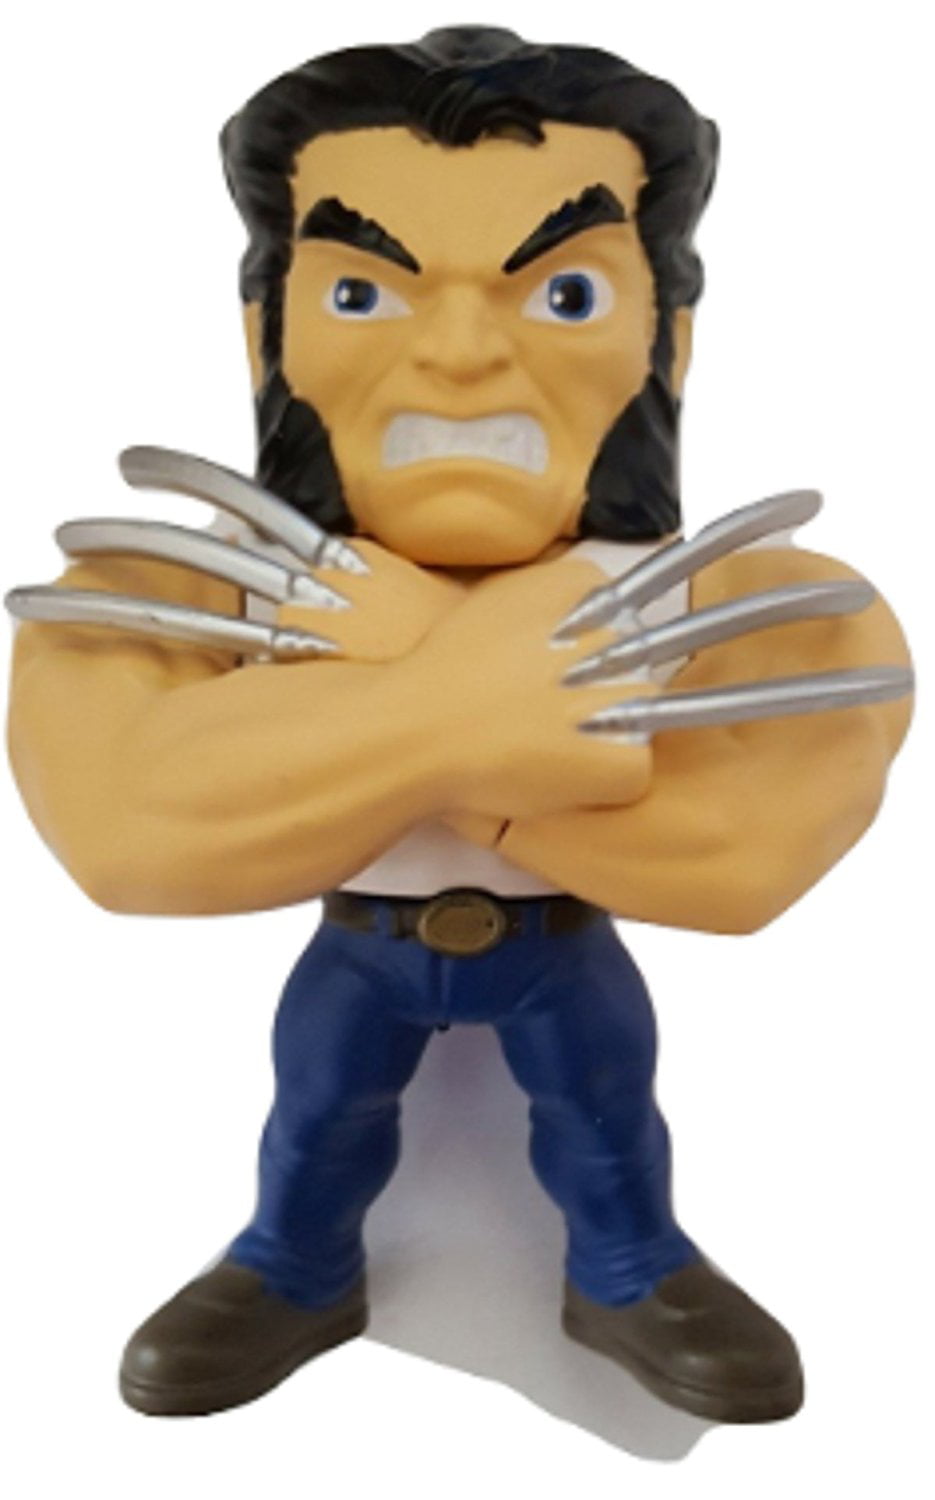 Jada Die-cast Metal Logan Wolverine M239 Lootcrate Figure Marvel for sale online 